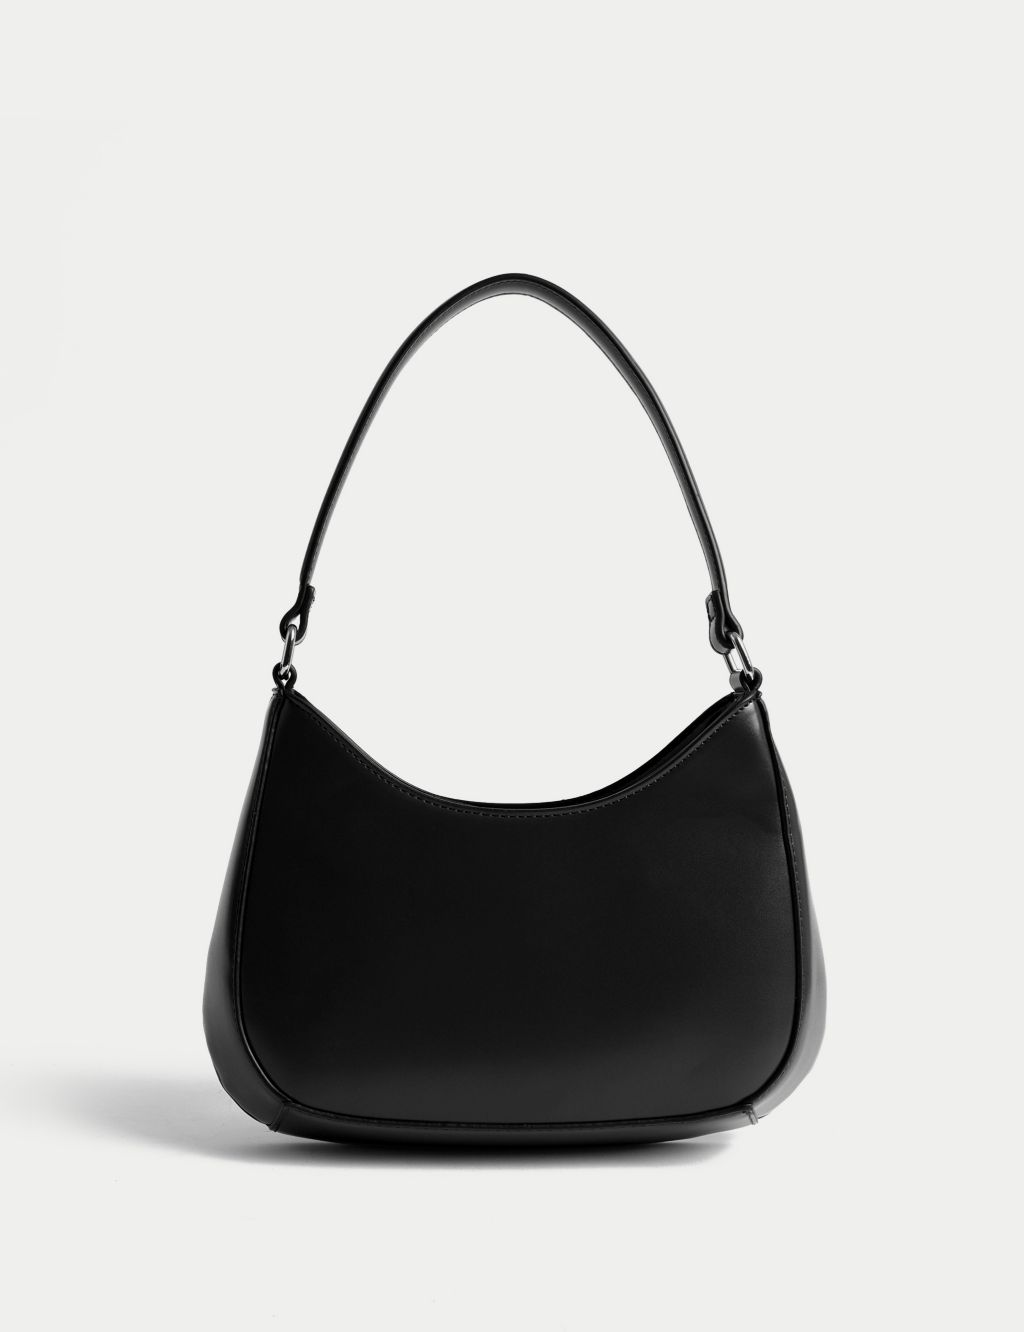 Women's Faux Leather Handbags